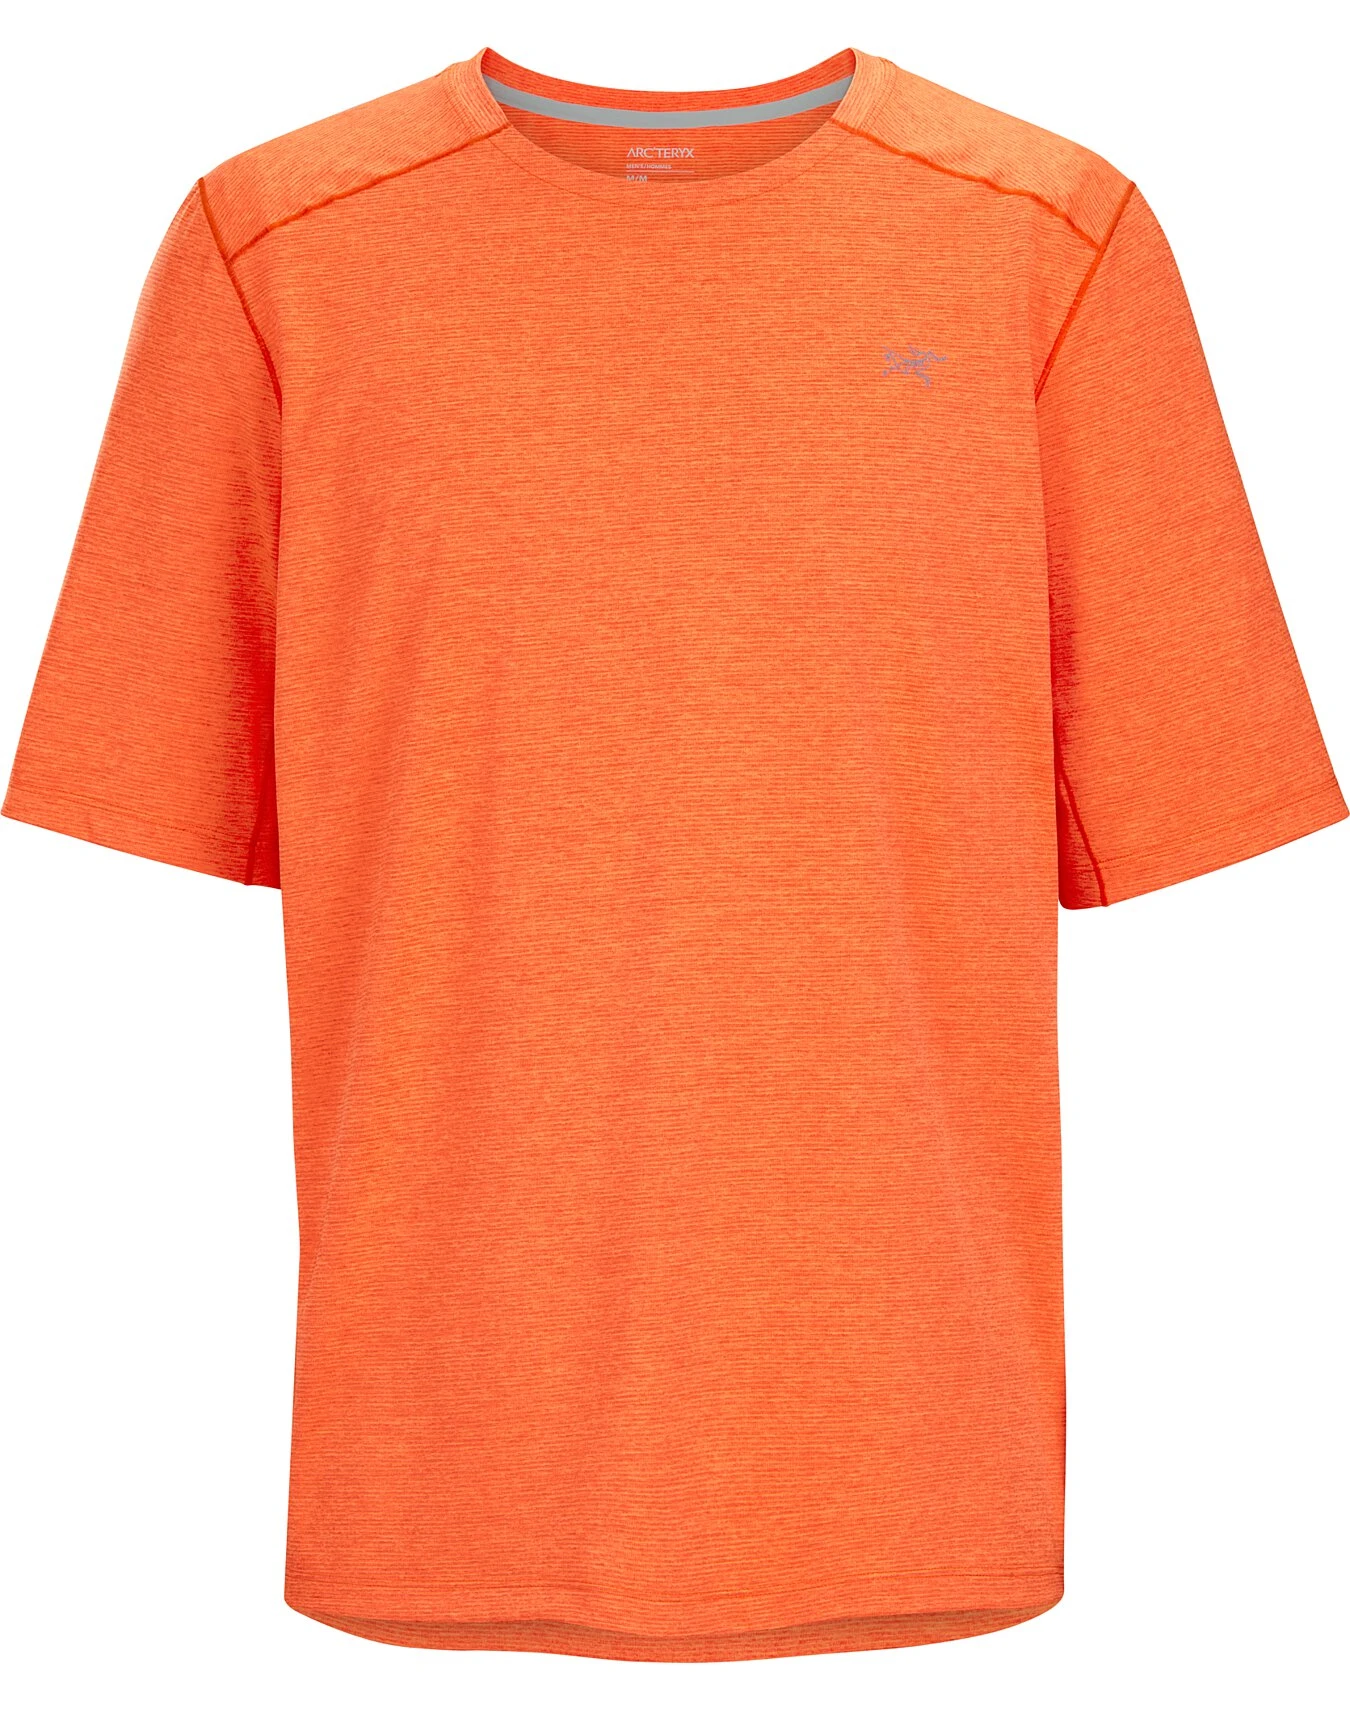 男士Cormac短袖T-shirt | CORMAC CREW NECK SHIRT SS MEN'S 商品